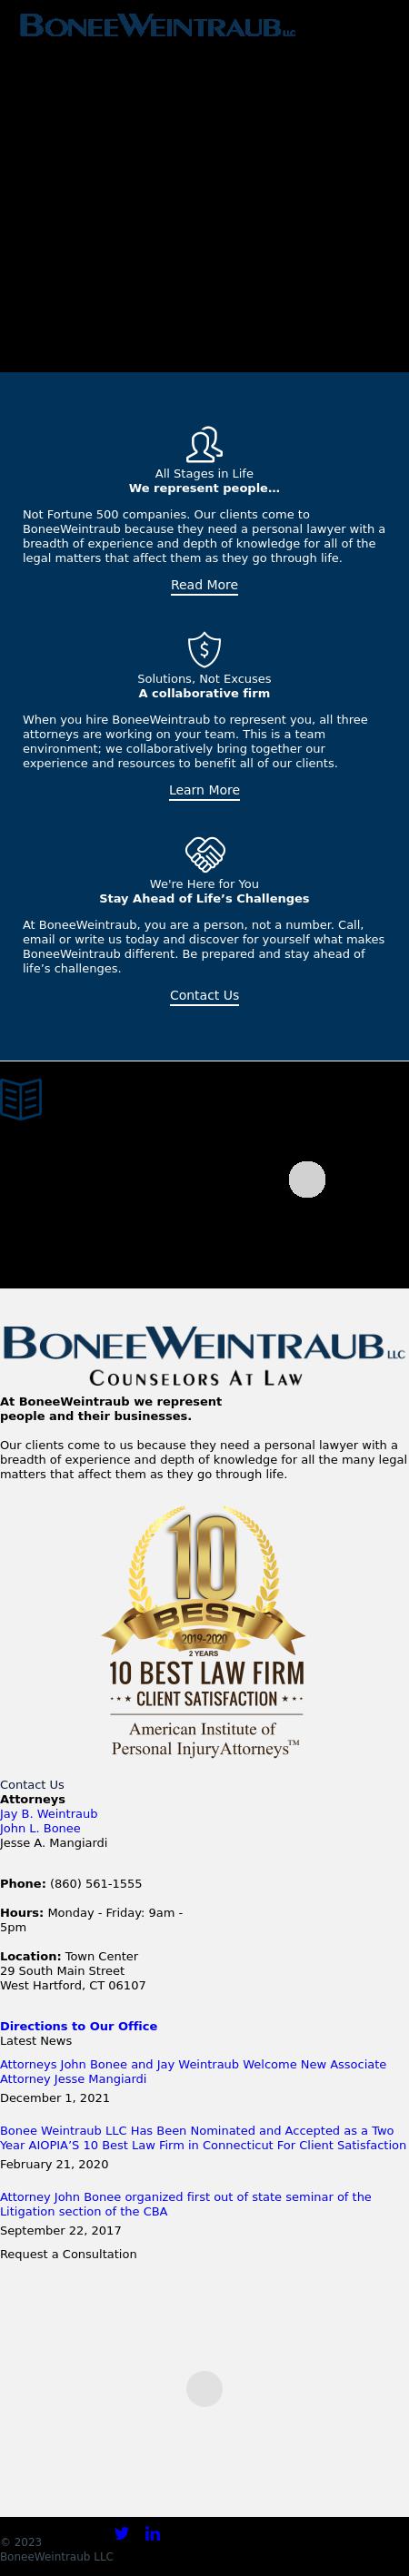 BoneeWeintraub LLC - West Hartford CT Lawyers